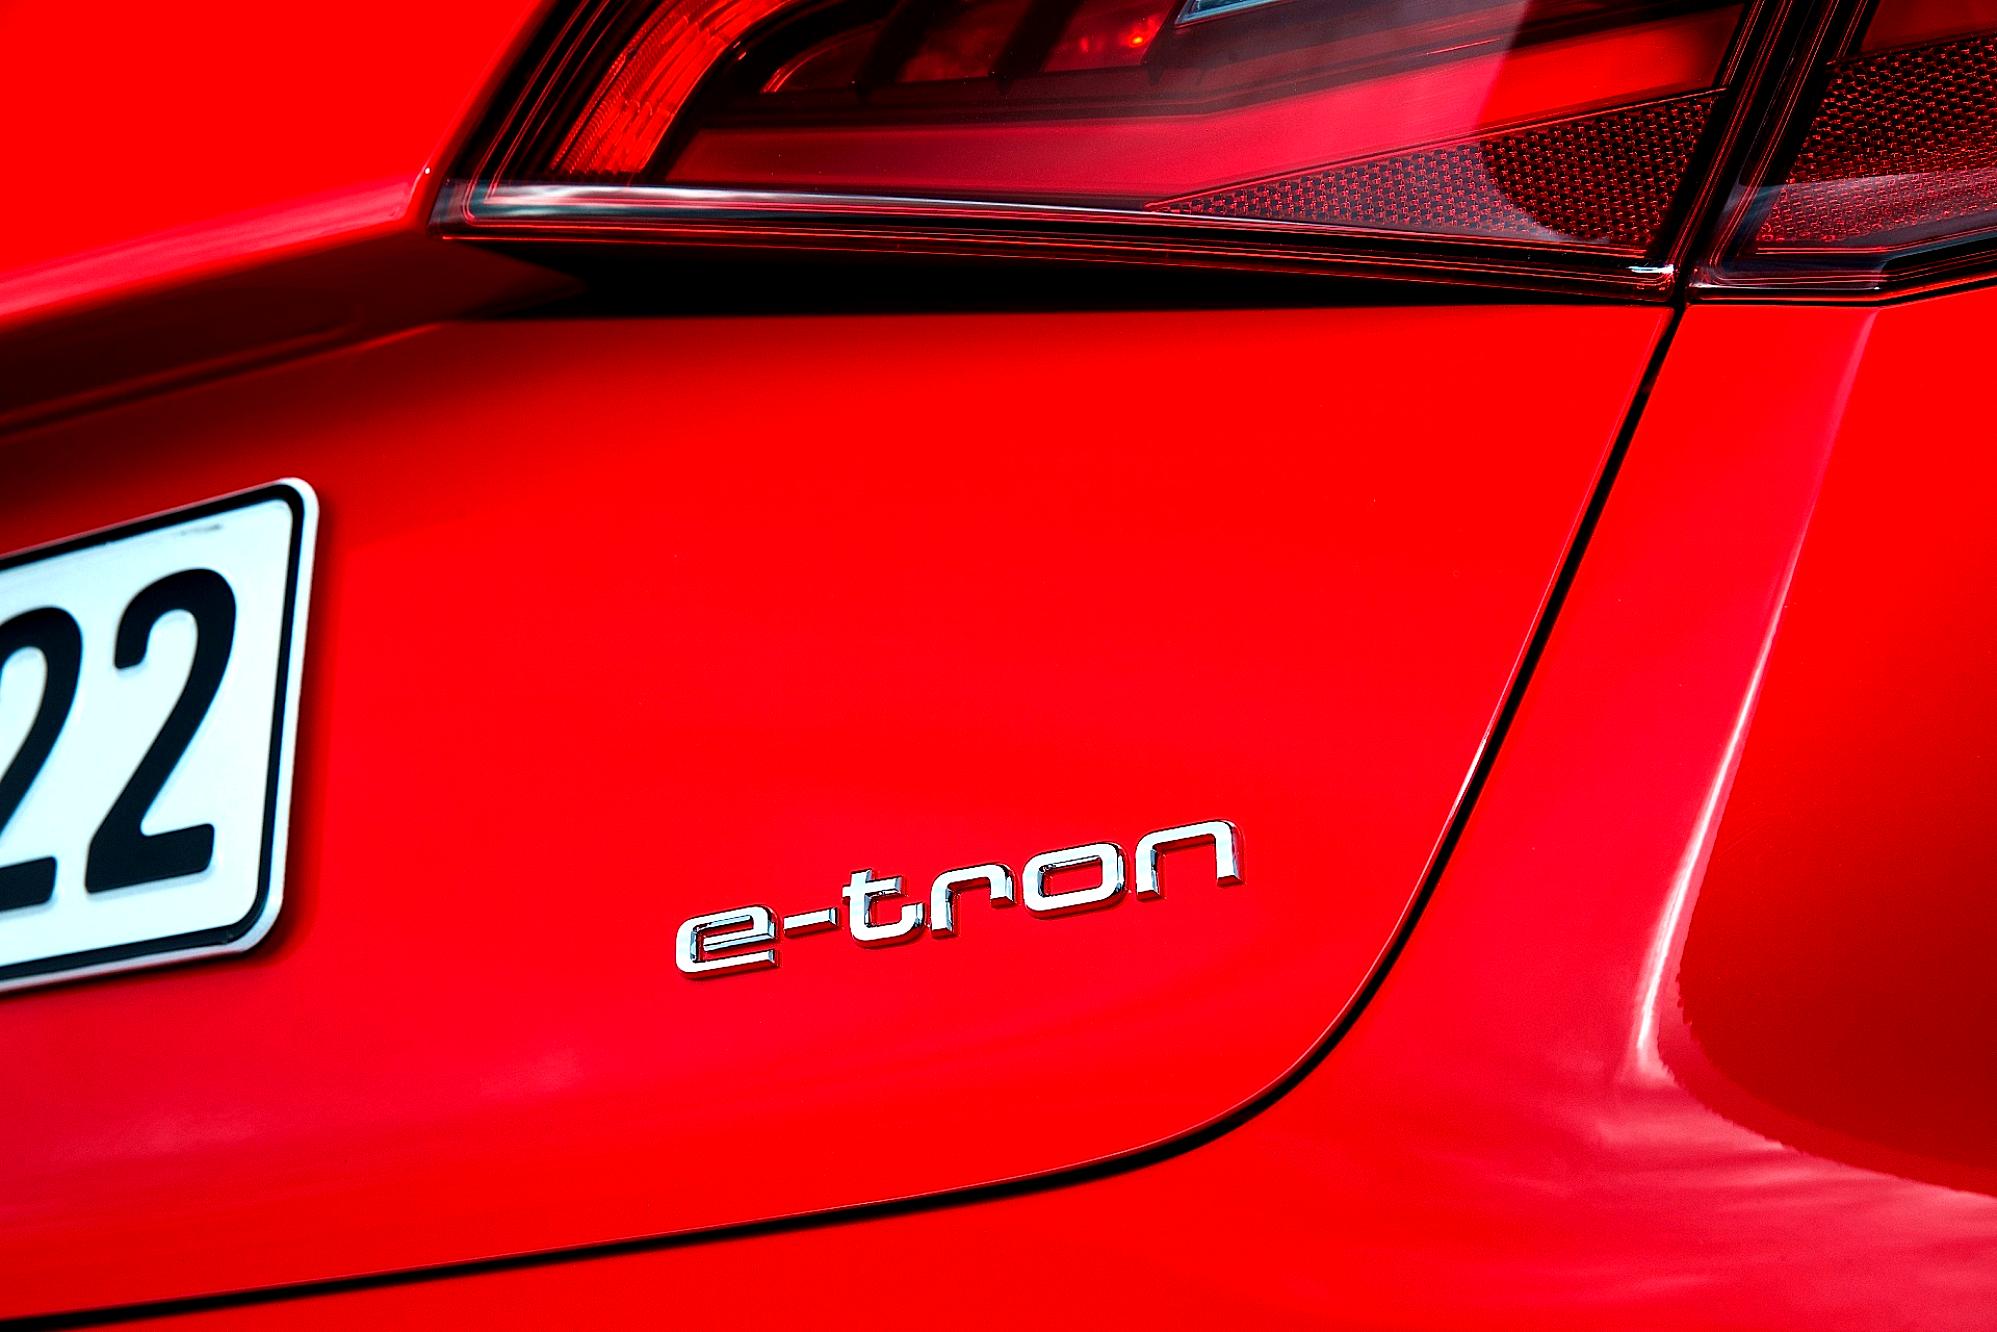 Audi A3 Sportback E-Tron 2013 #47